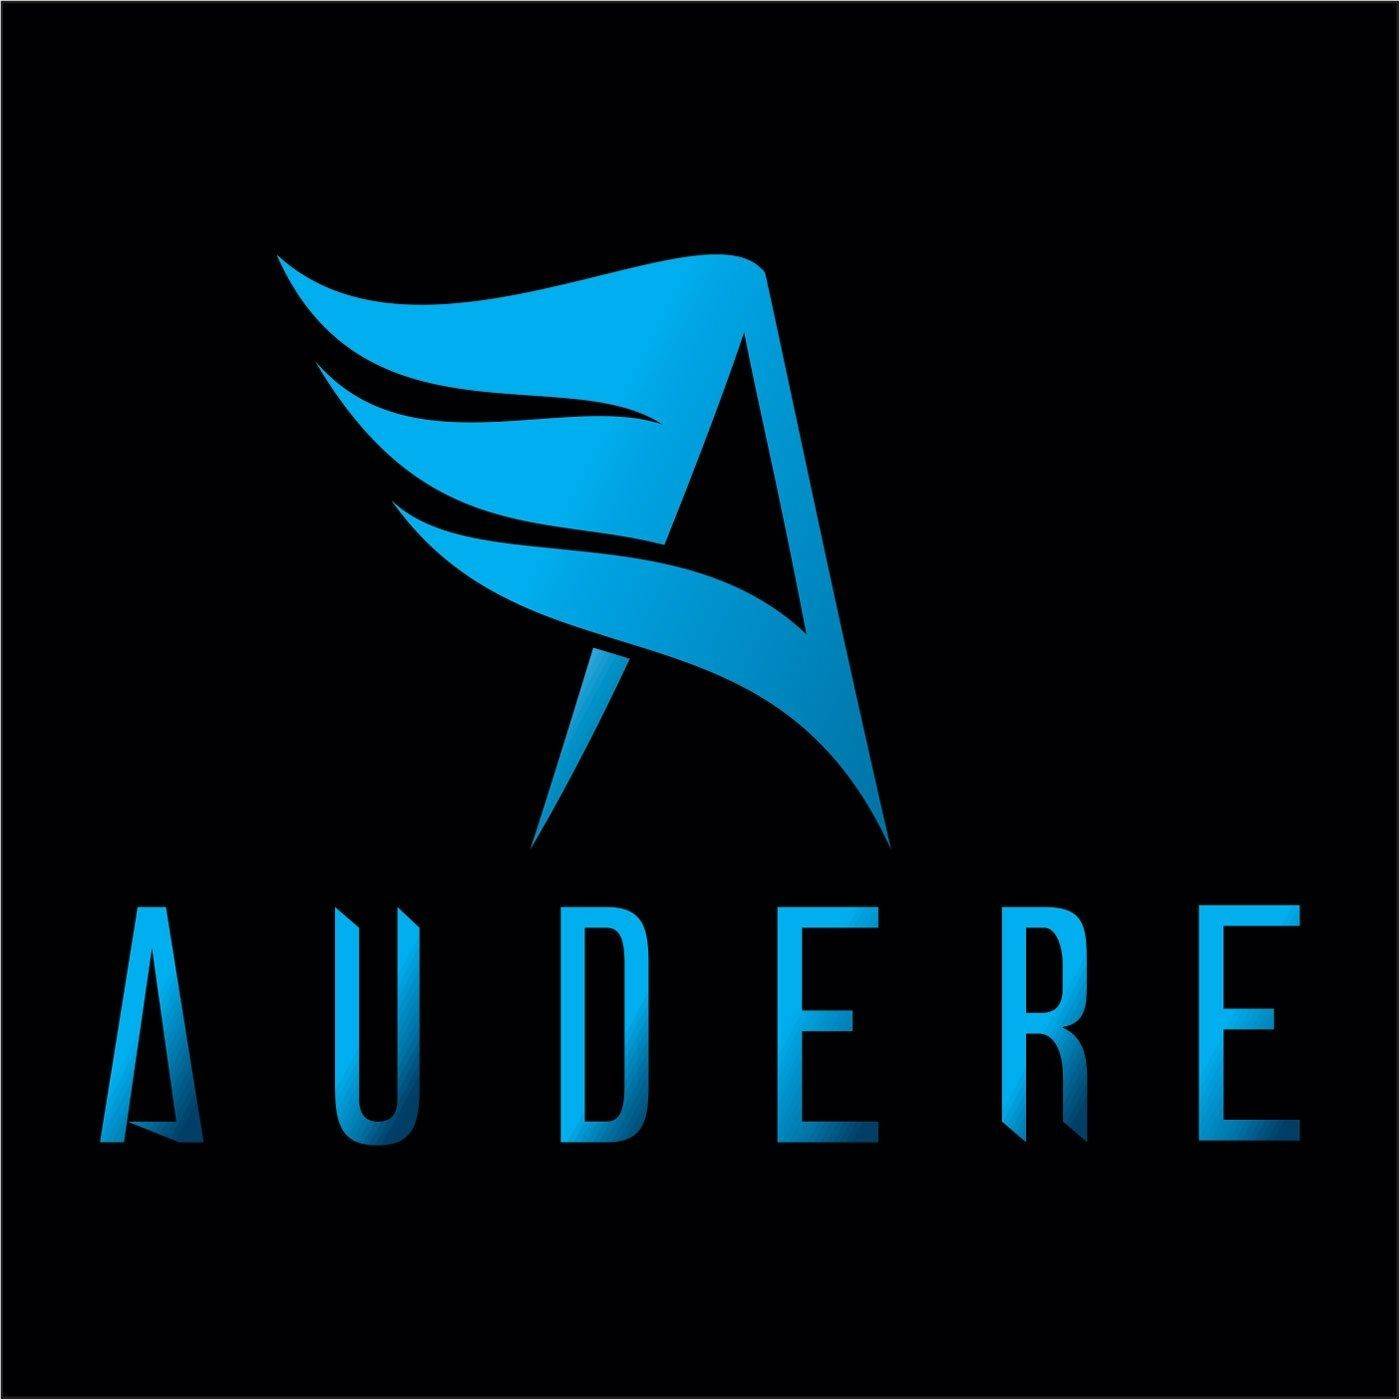 Audere (EP)